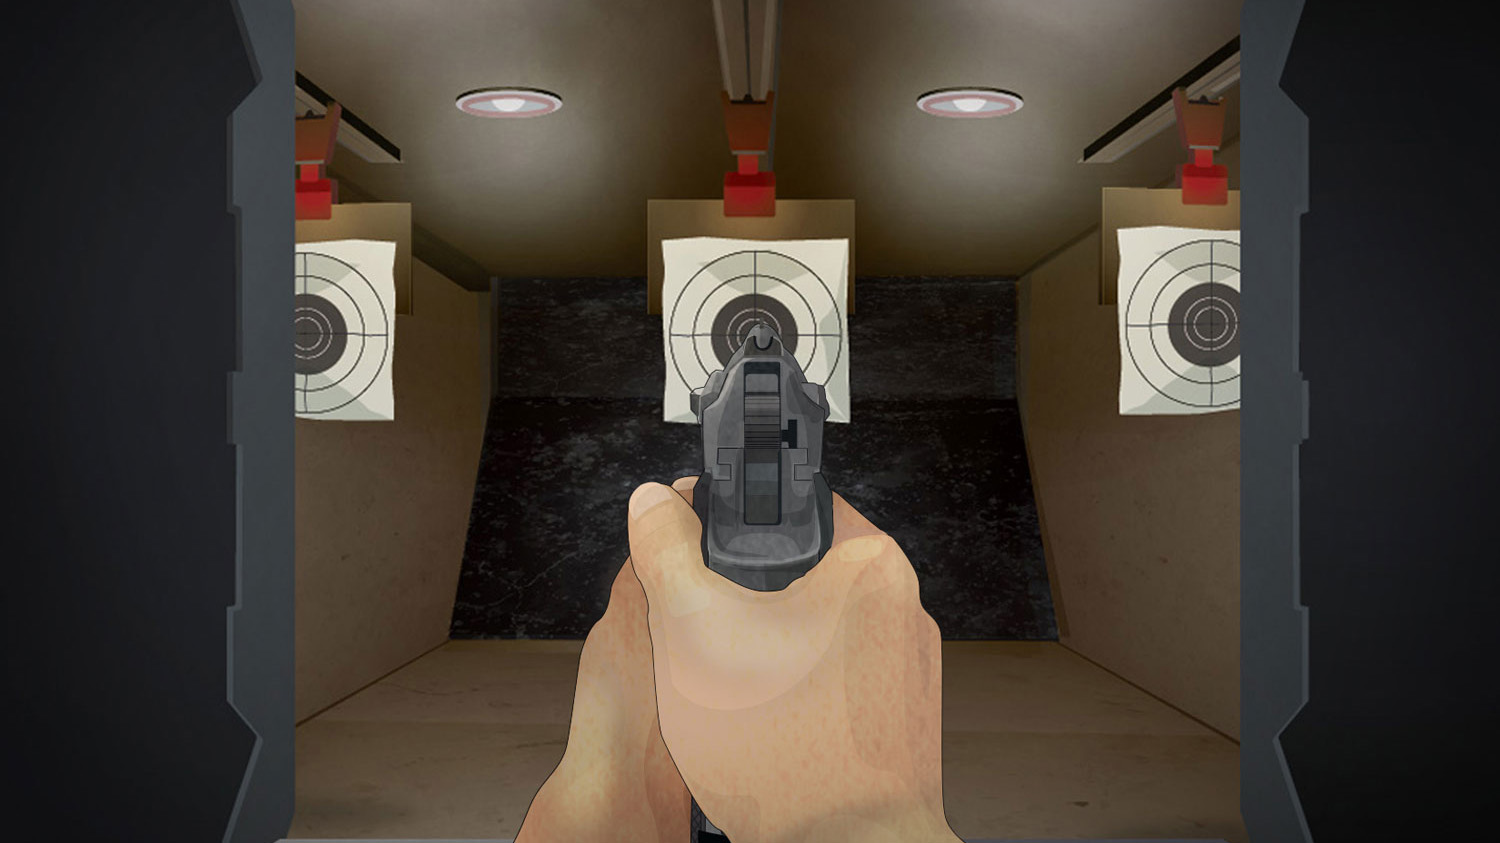 Illustration of a man's hands aiming a forward facing handgun at a shooting range target.